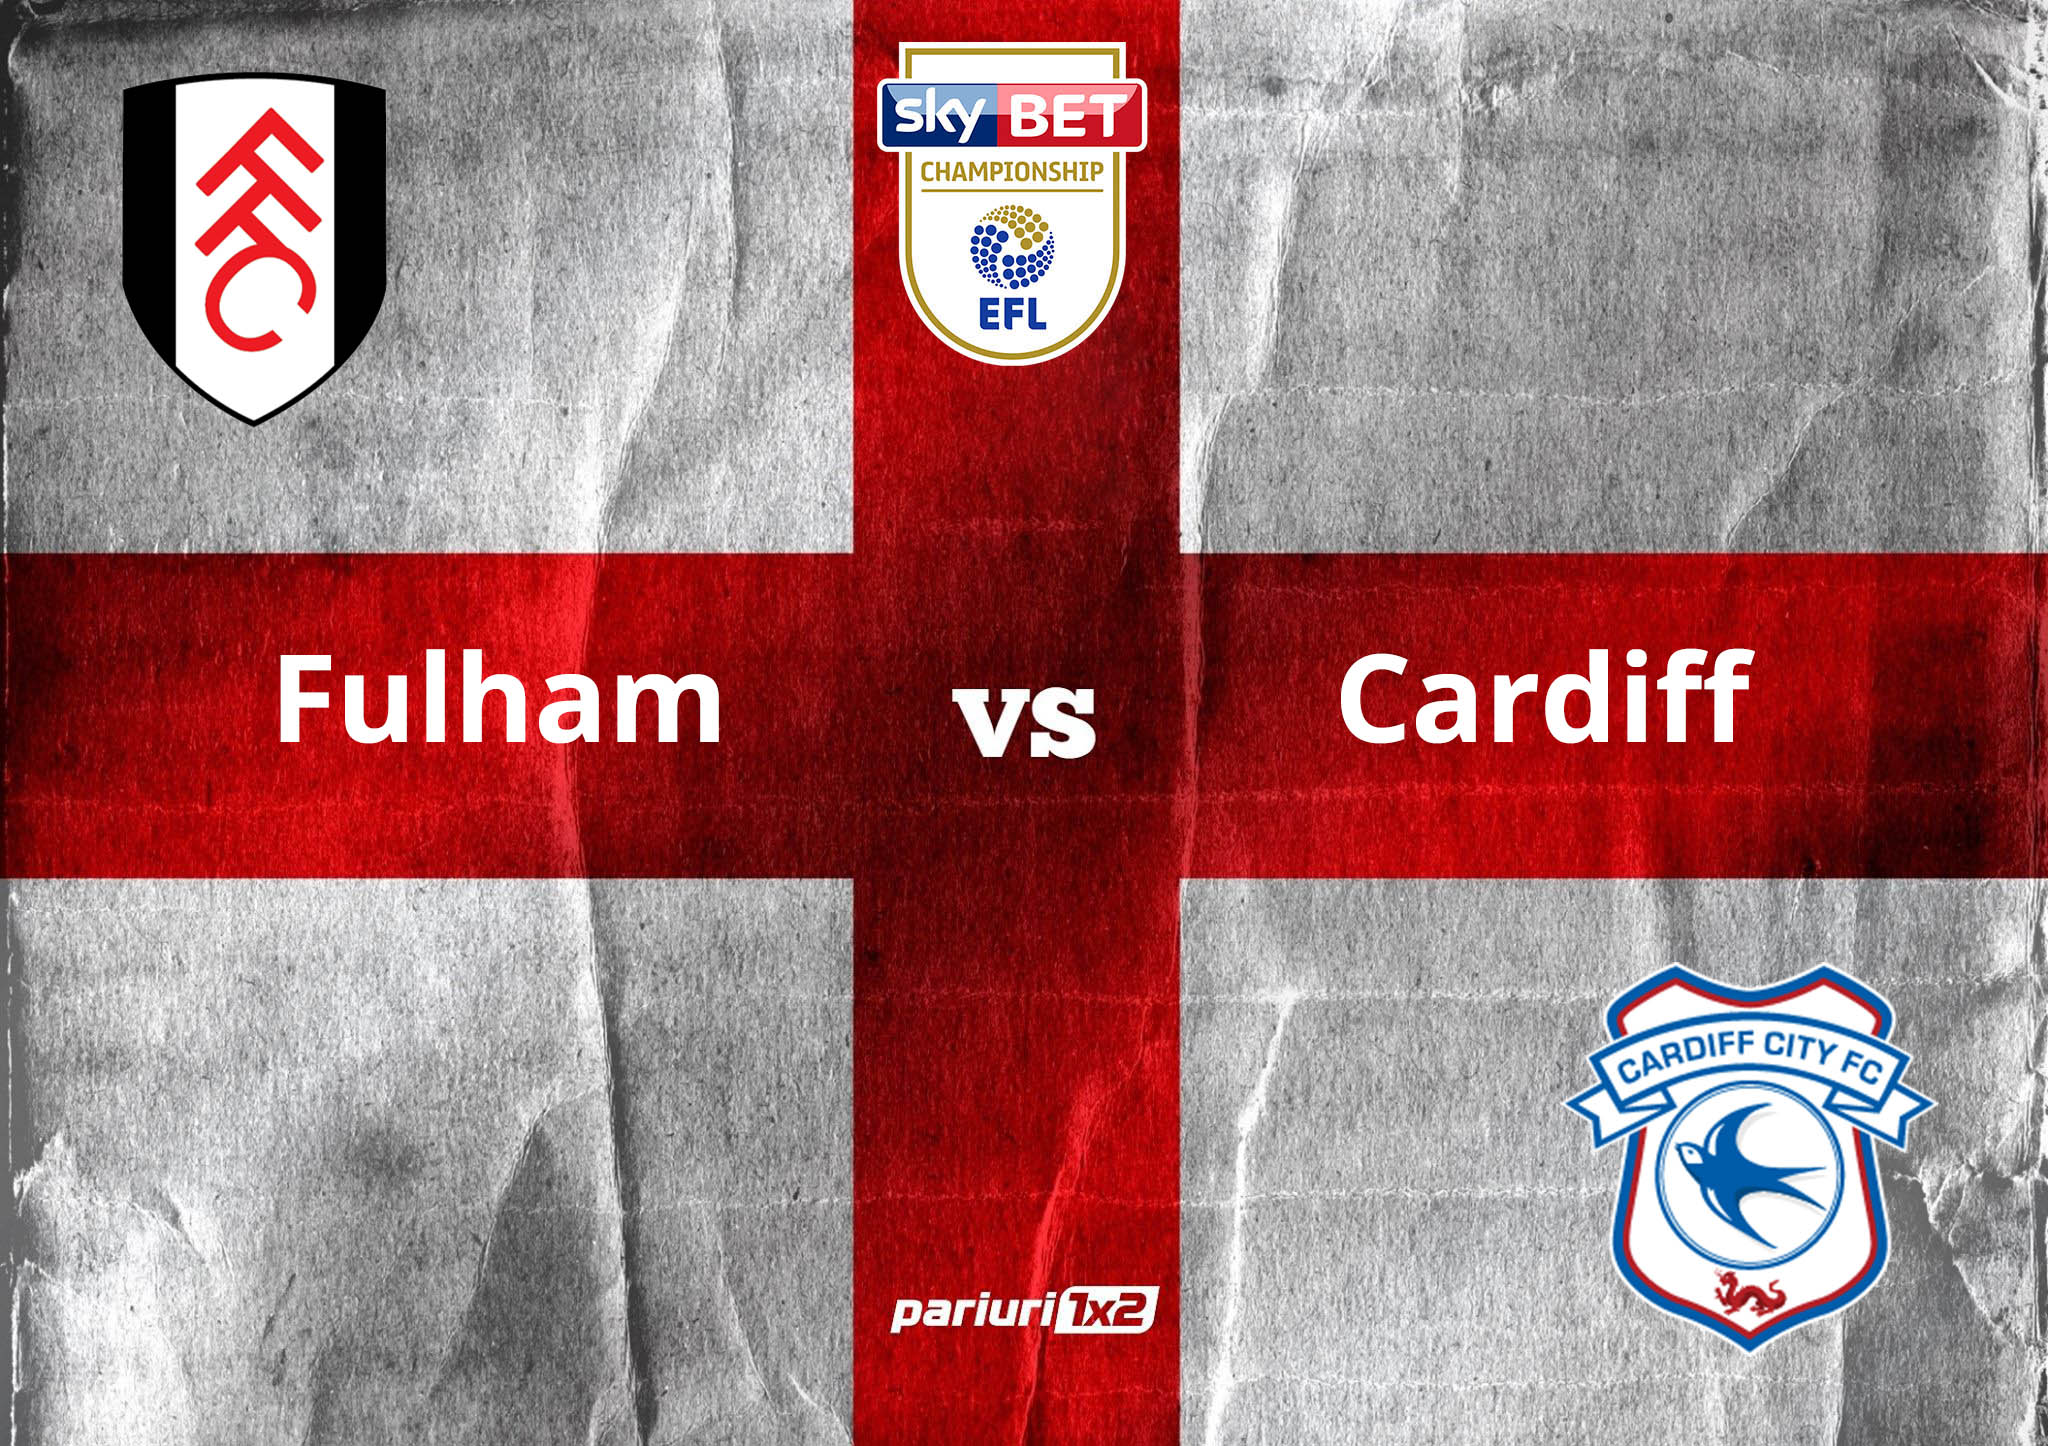 Ponturi fotbal » Fulham – Cardiff | Londonezii au castigat in deplasare cu 2-0 si au prima sansa la calificarea in finala play-off-ului: cota 1.96